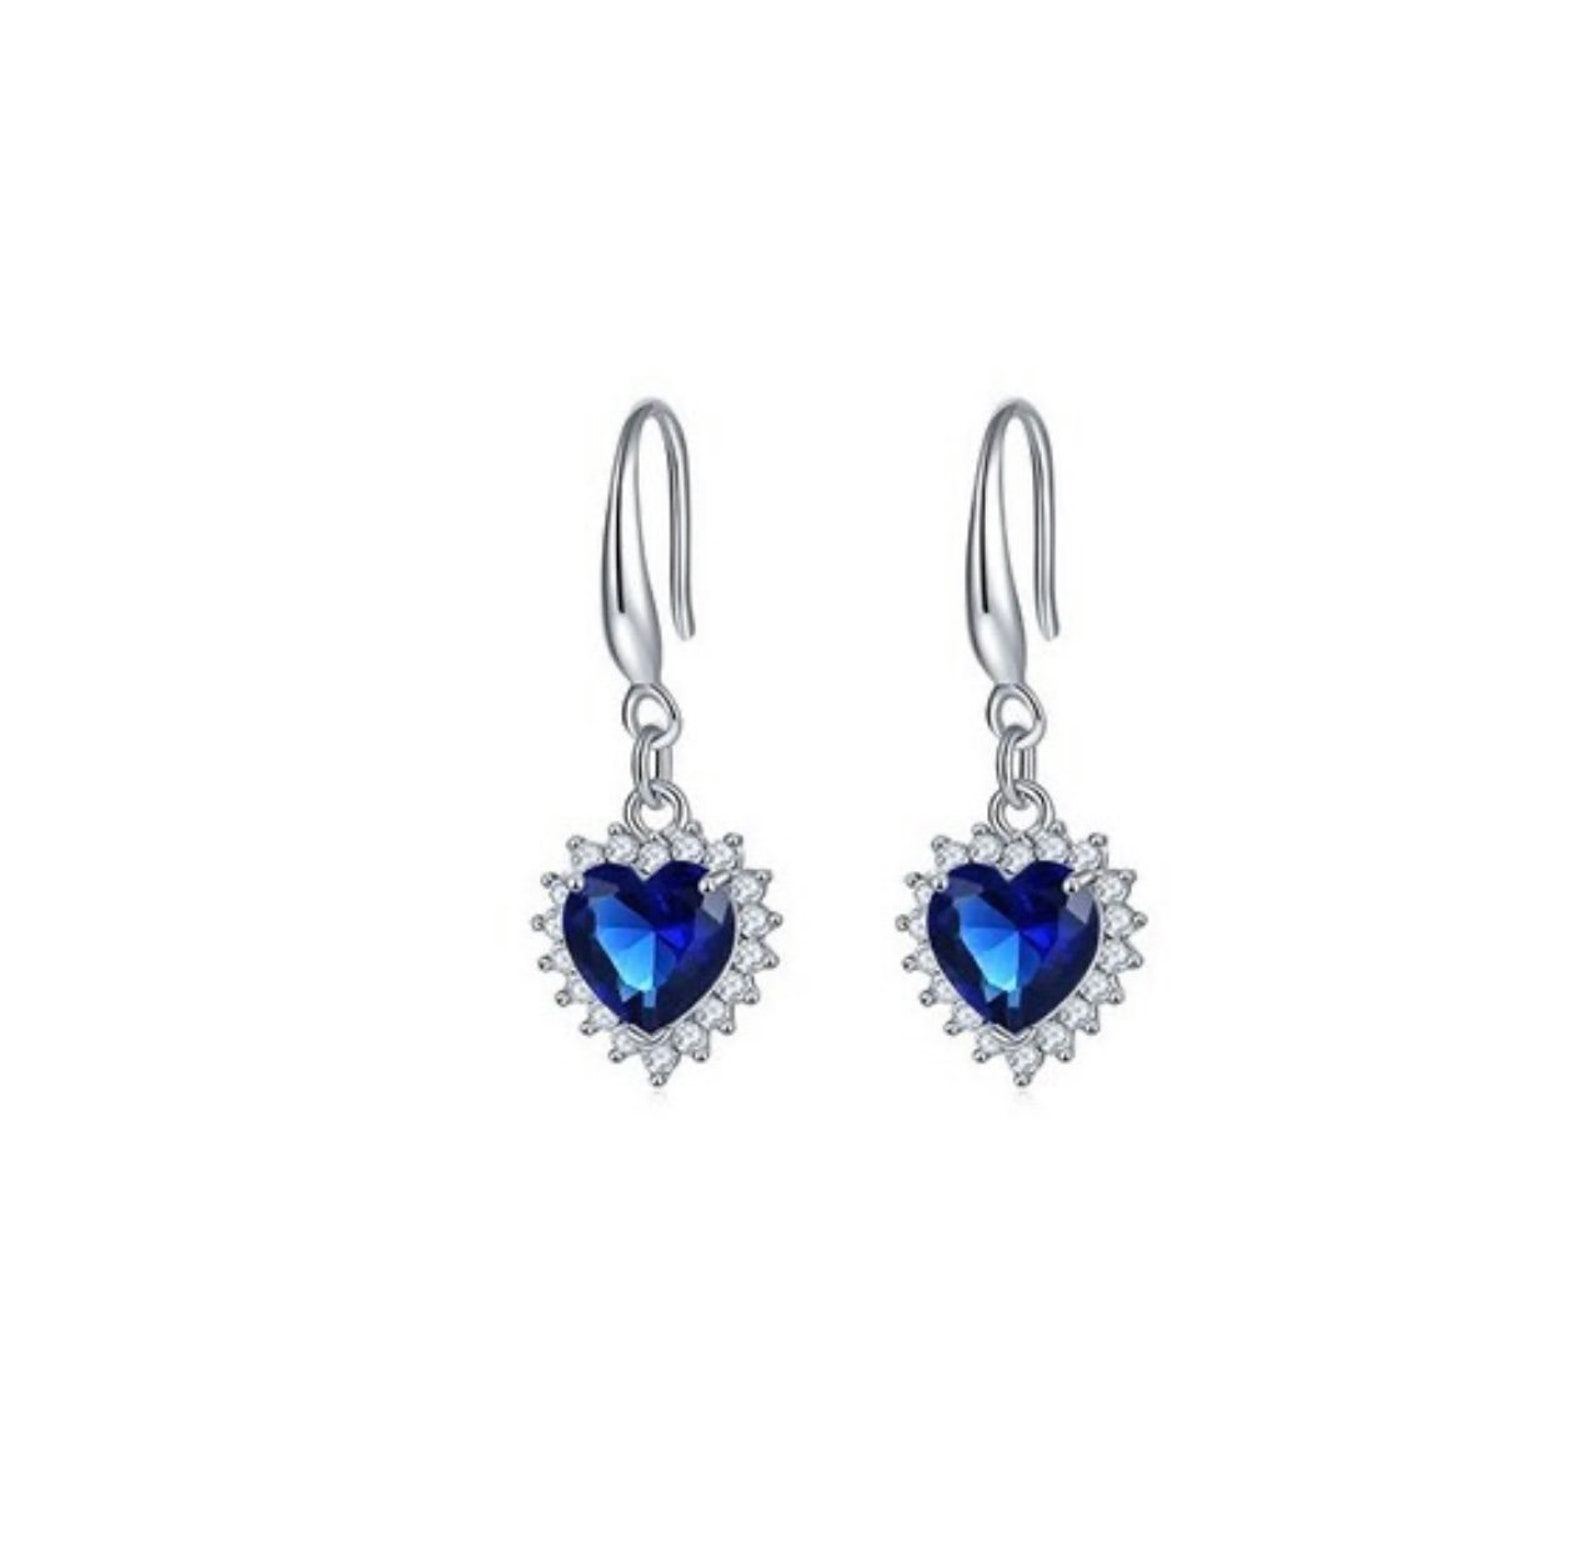 Titanic Blue Diamond Style Blue Crystal Necklace Luxury Gift - Etsy